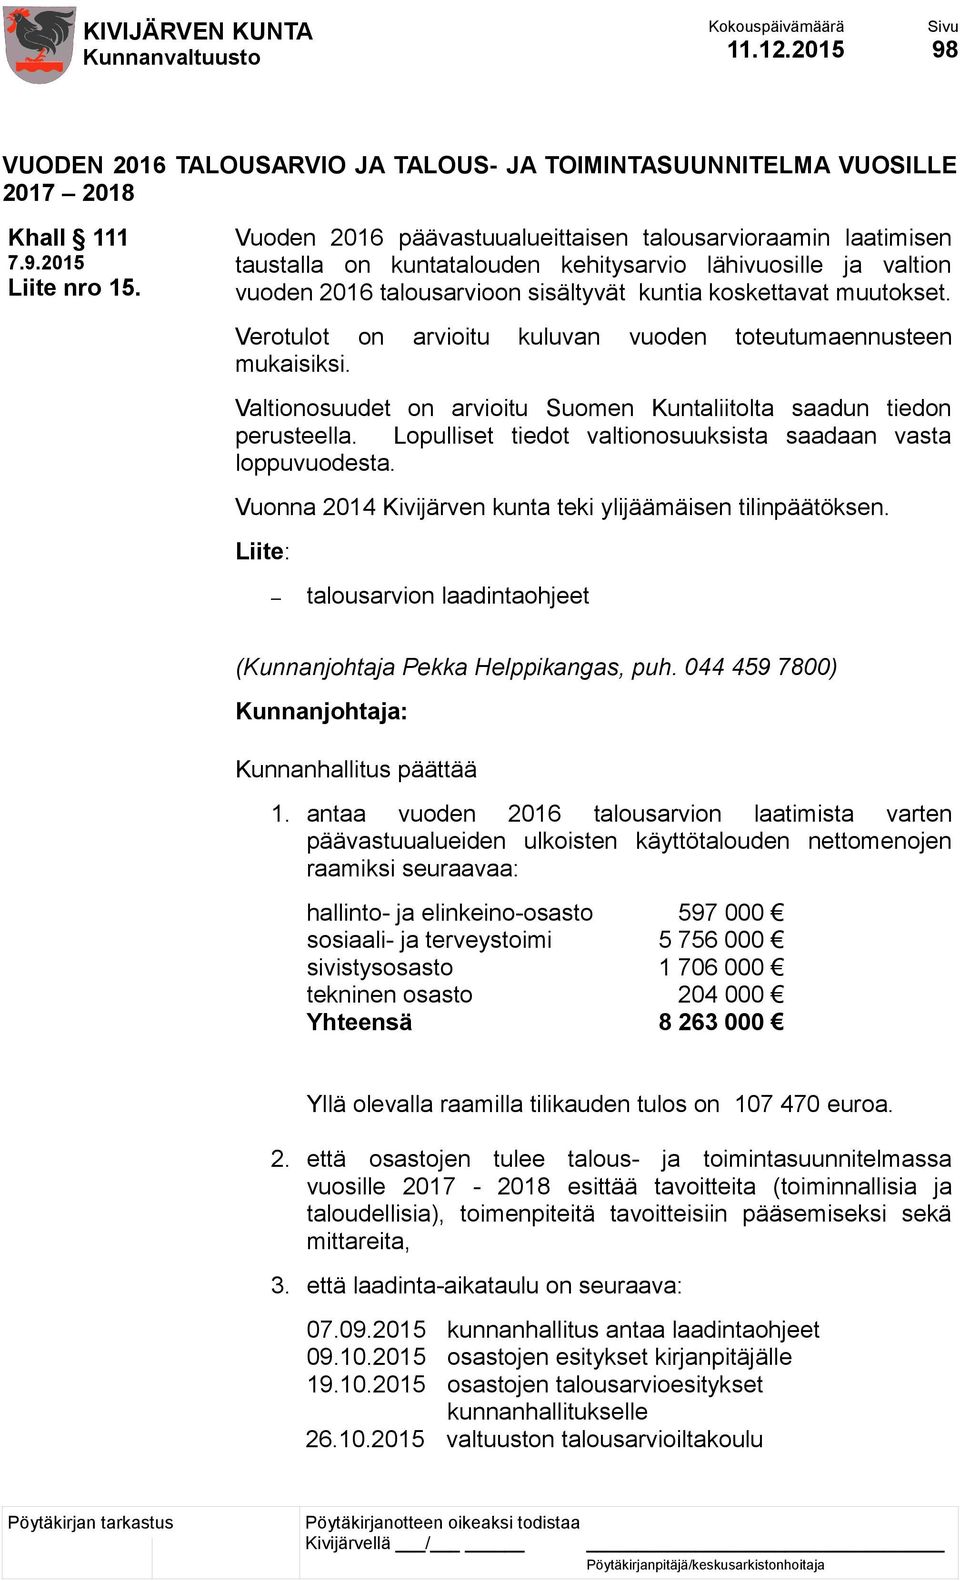 Verotulot on arvioitu kuluvan vuoden toteutumaennusteen mukaisiksi. Valtionosuudet on arvioitu Suomen Kuntaliitolta saadun tiedon perusteella.